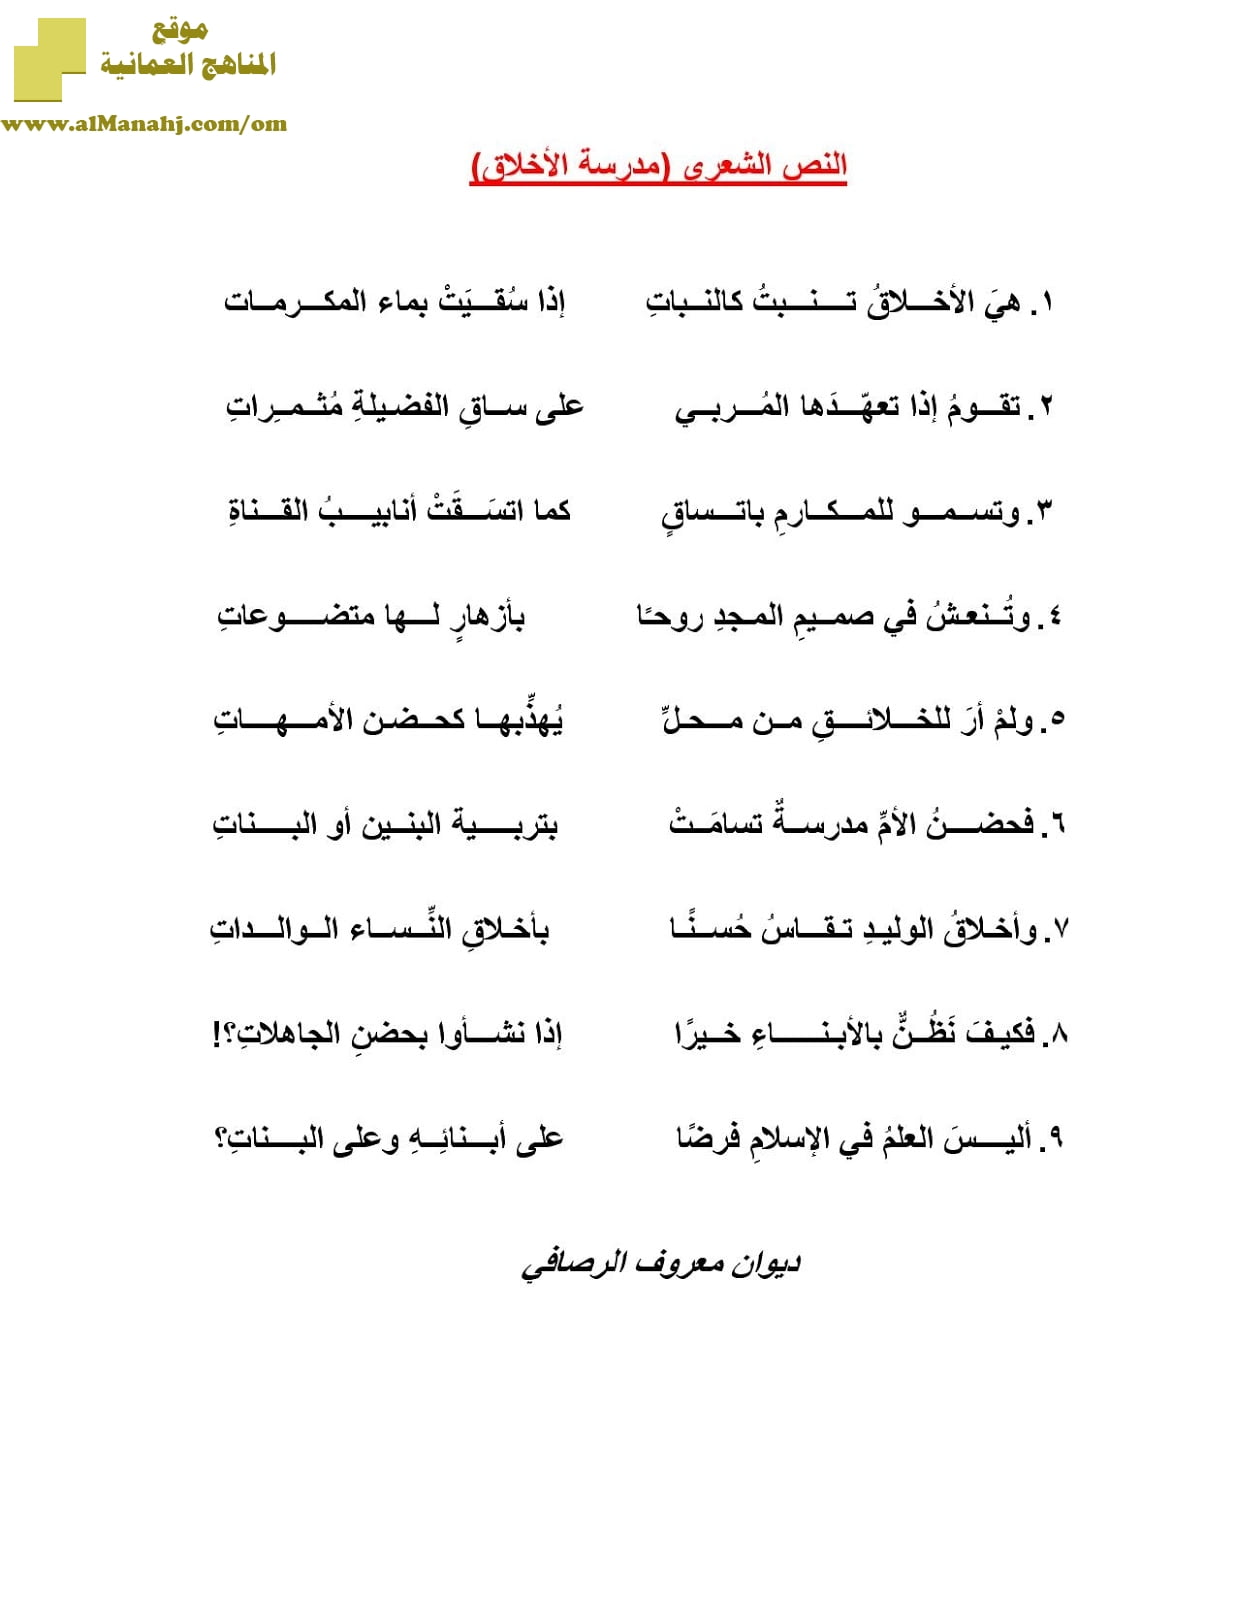 شرح نص الشعر وقصيدة مدرسة الاخلاق (لغة عربية) السادس